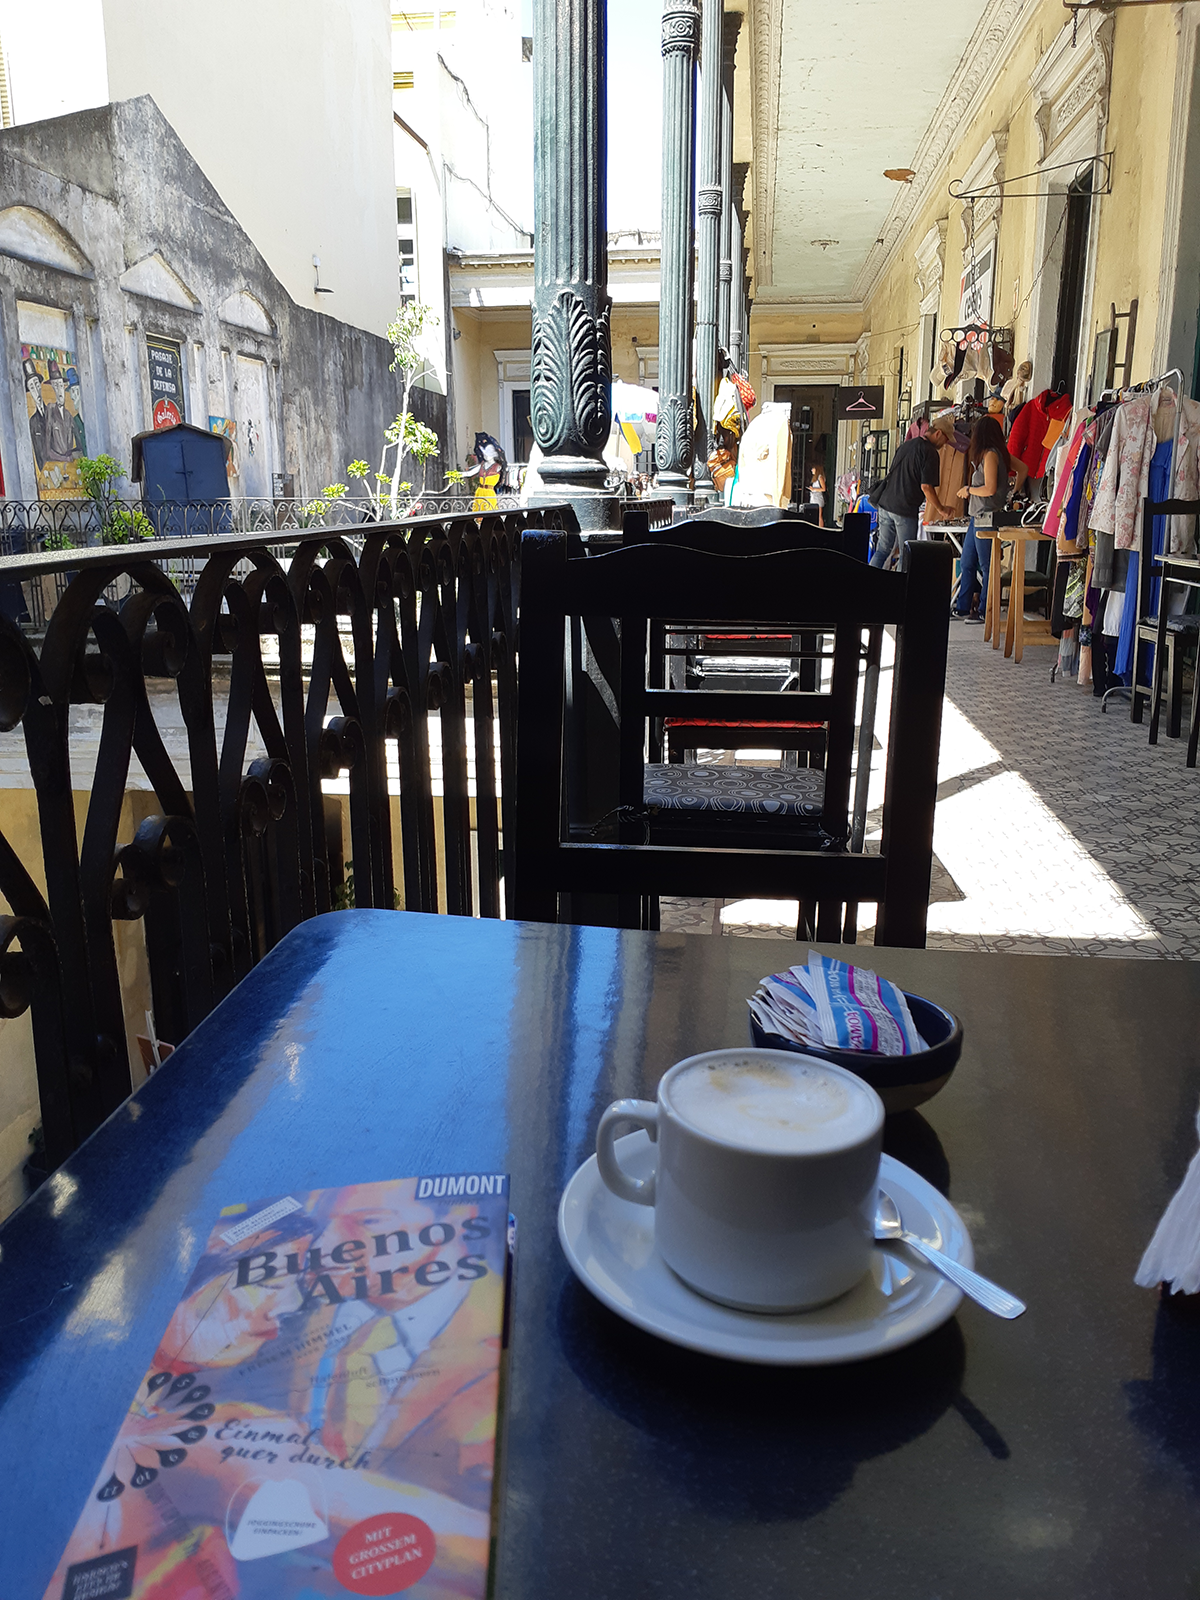 Tisch im Straßencafé mit Kaffee